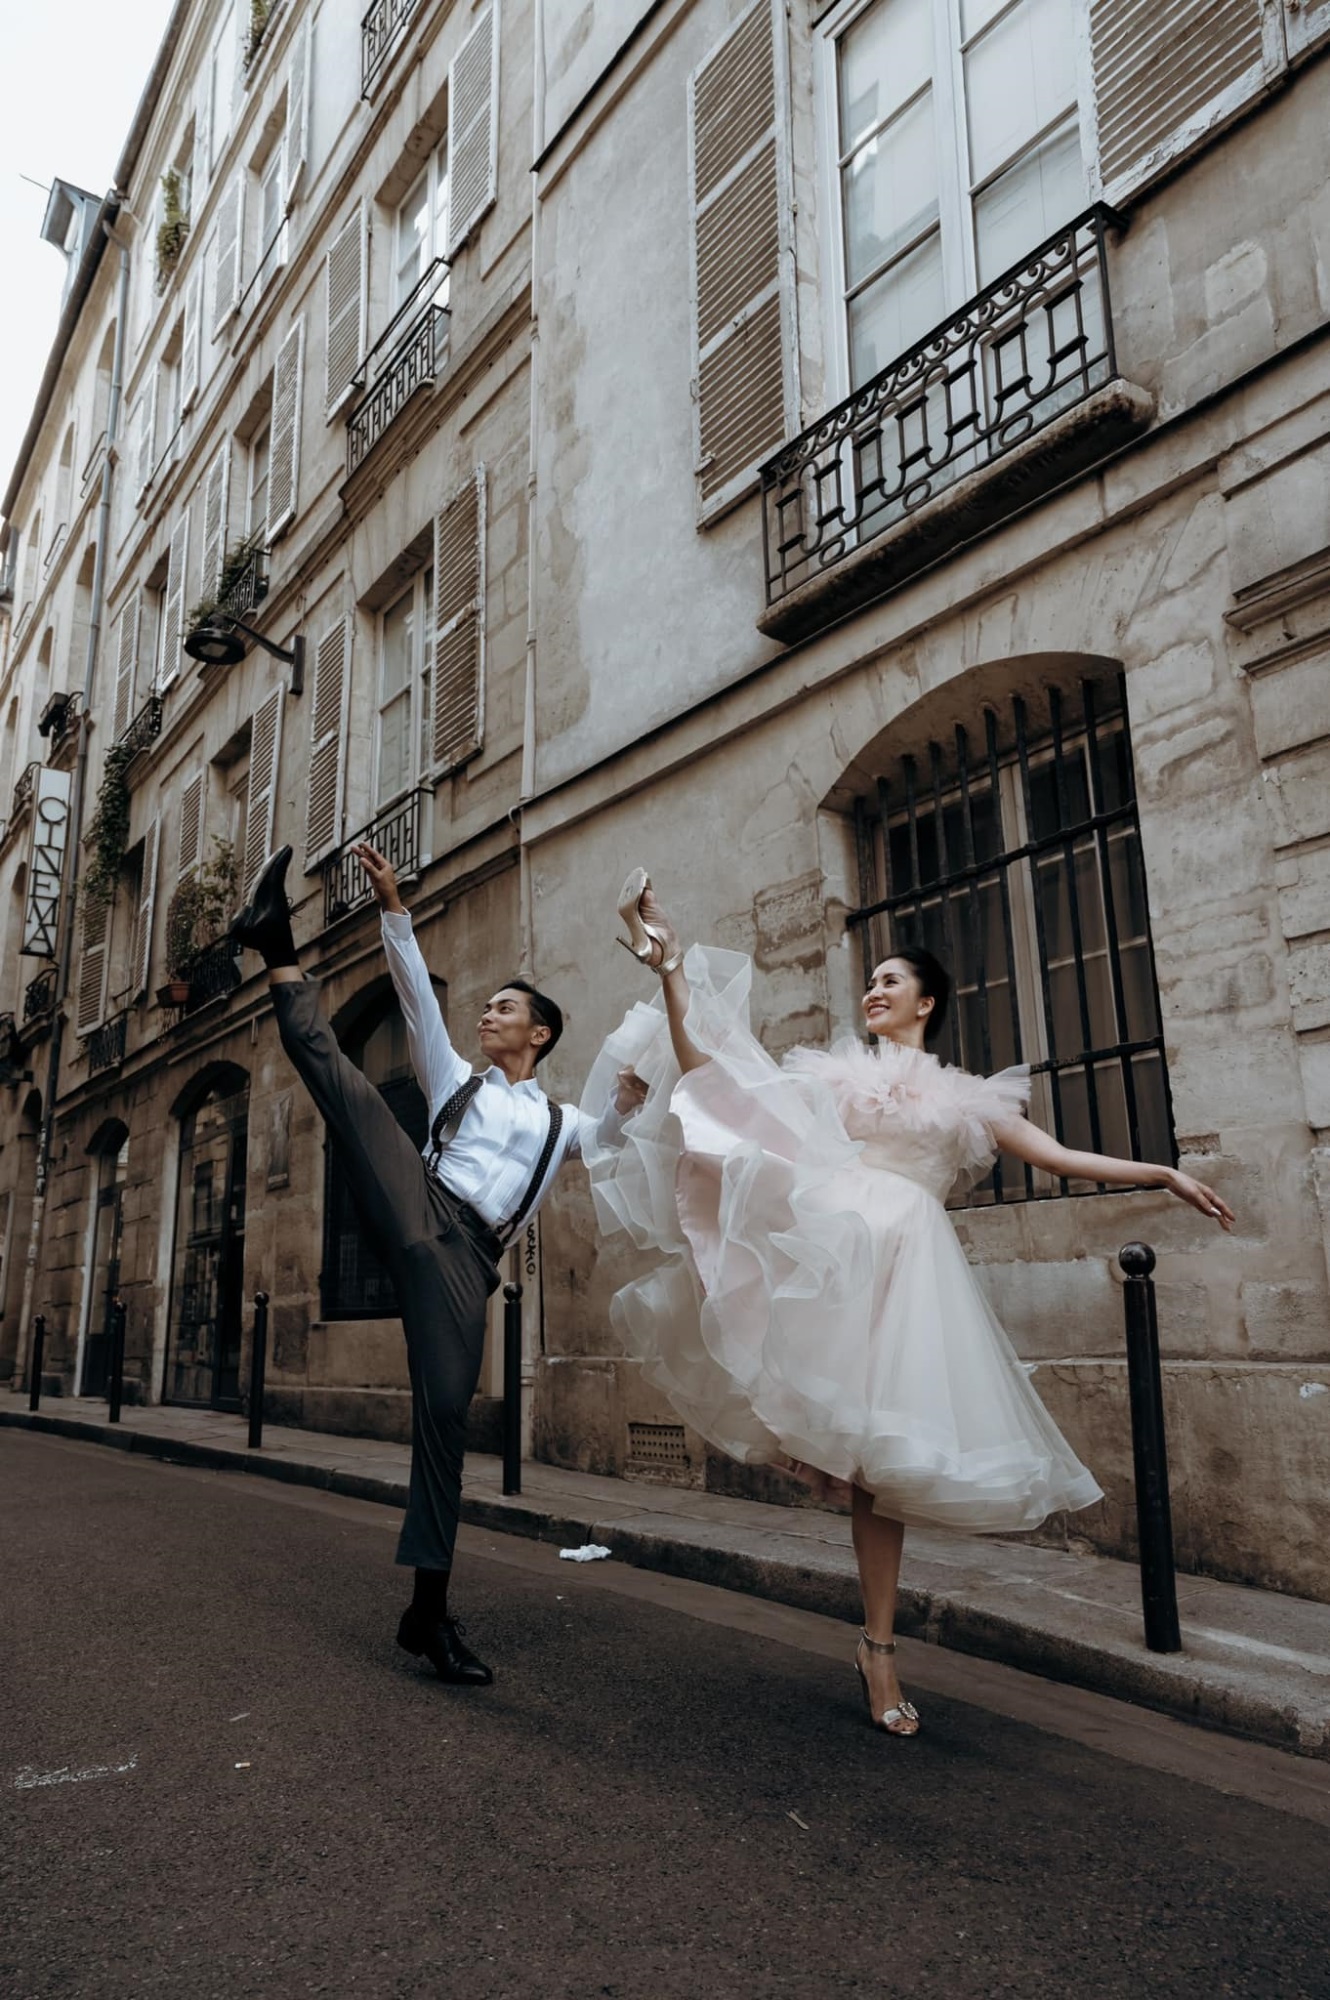 Phan Hiển và Khánh Thi tái hiện chuyện tình yêu gắn liền với nhảy múa trong bộ ảnh cưới chụp ở Pháp - Ảnh 6